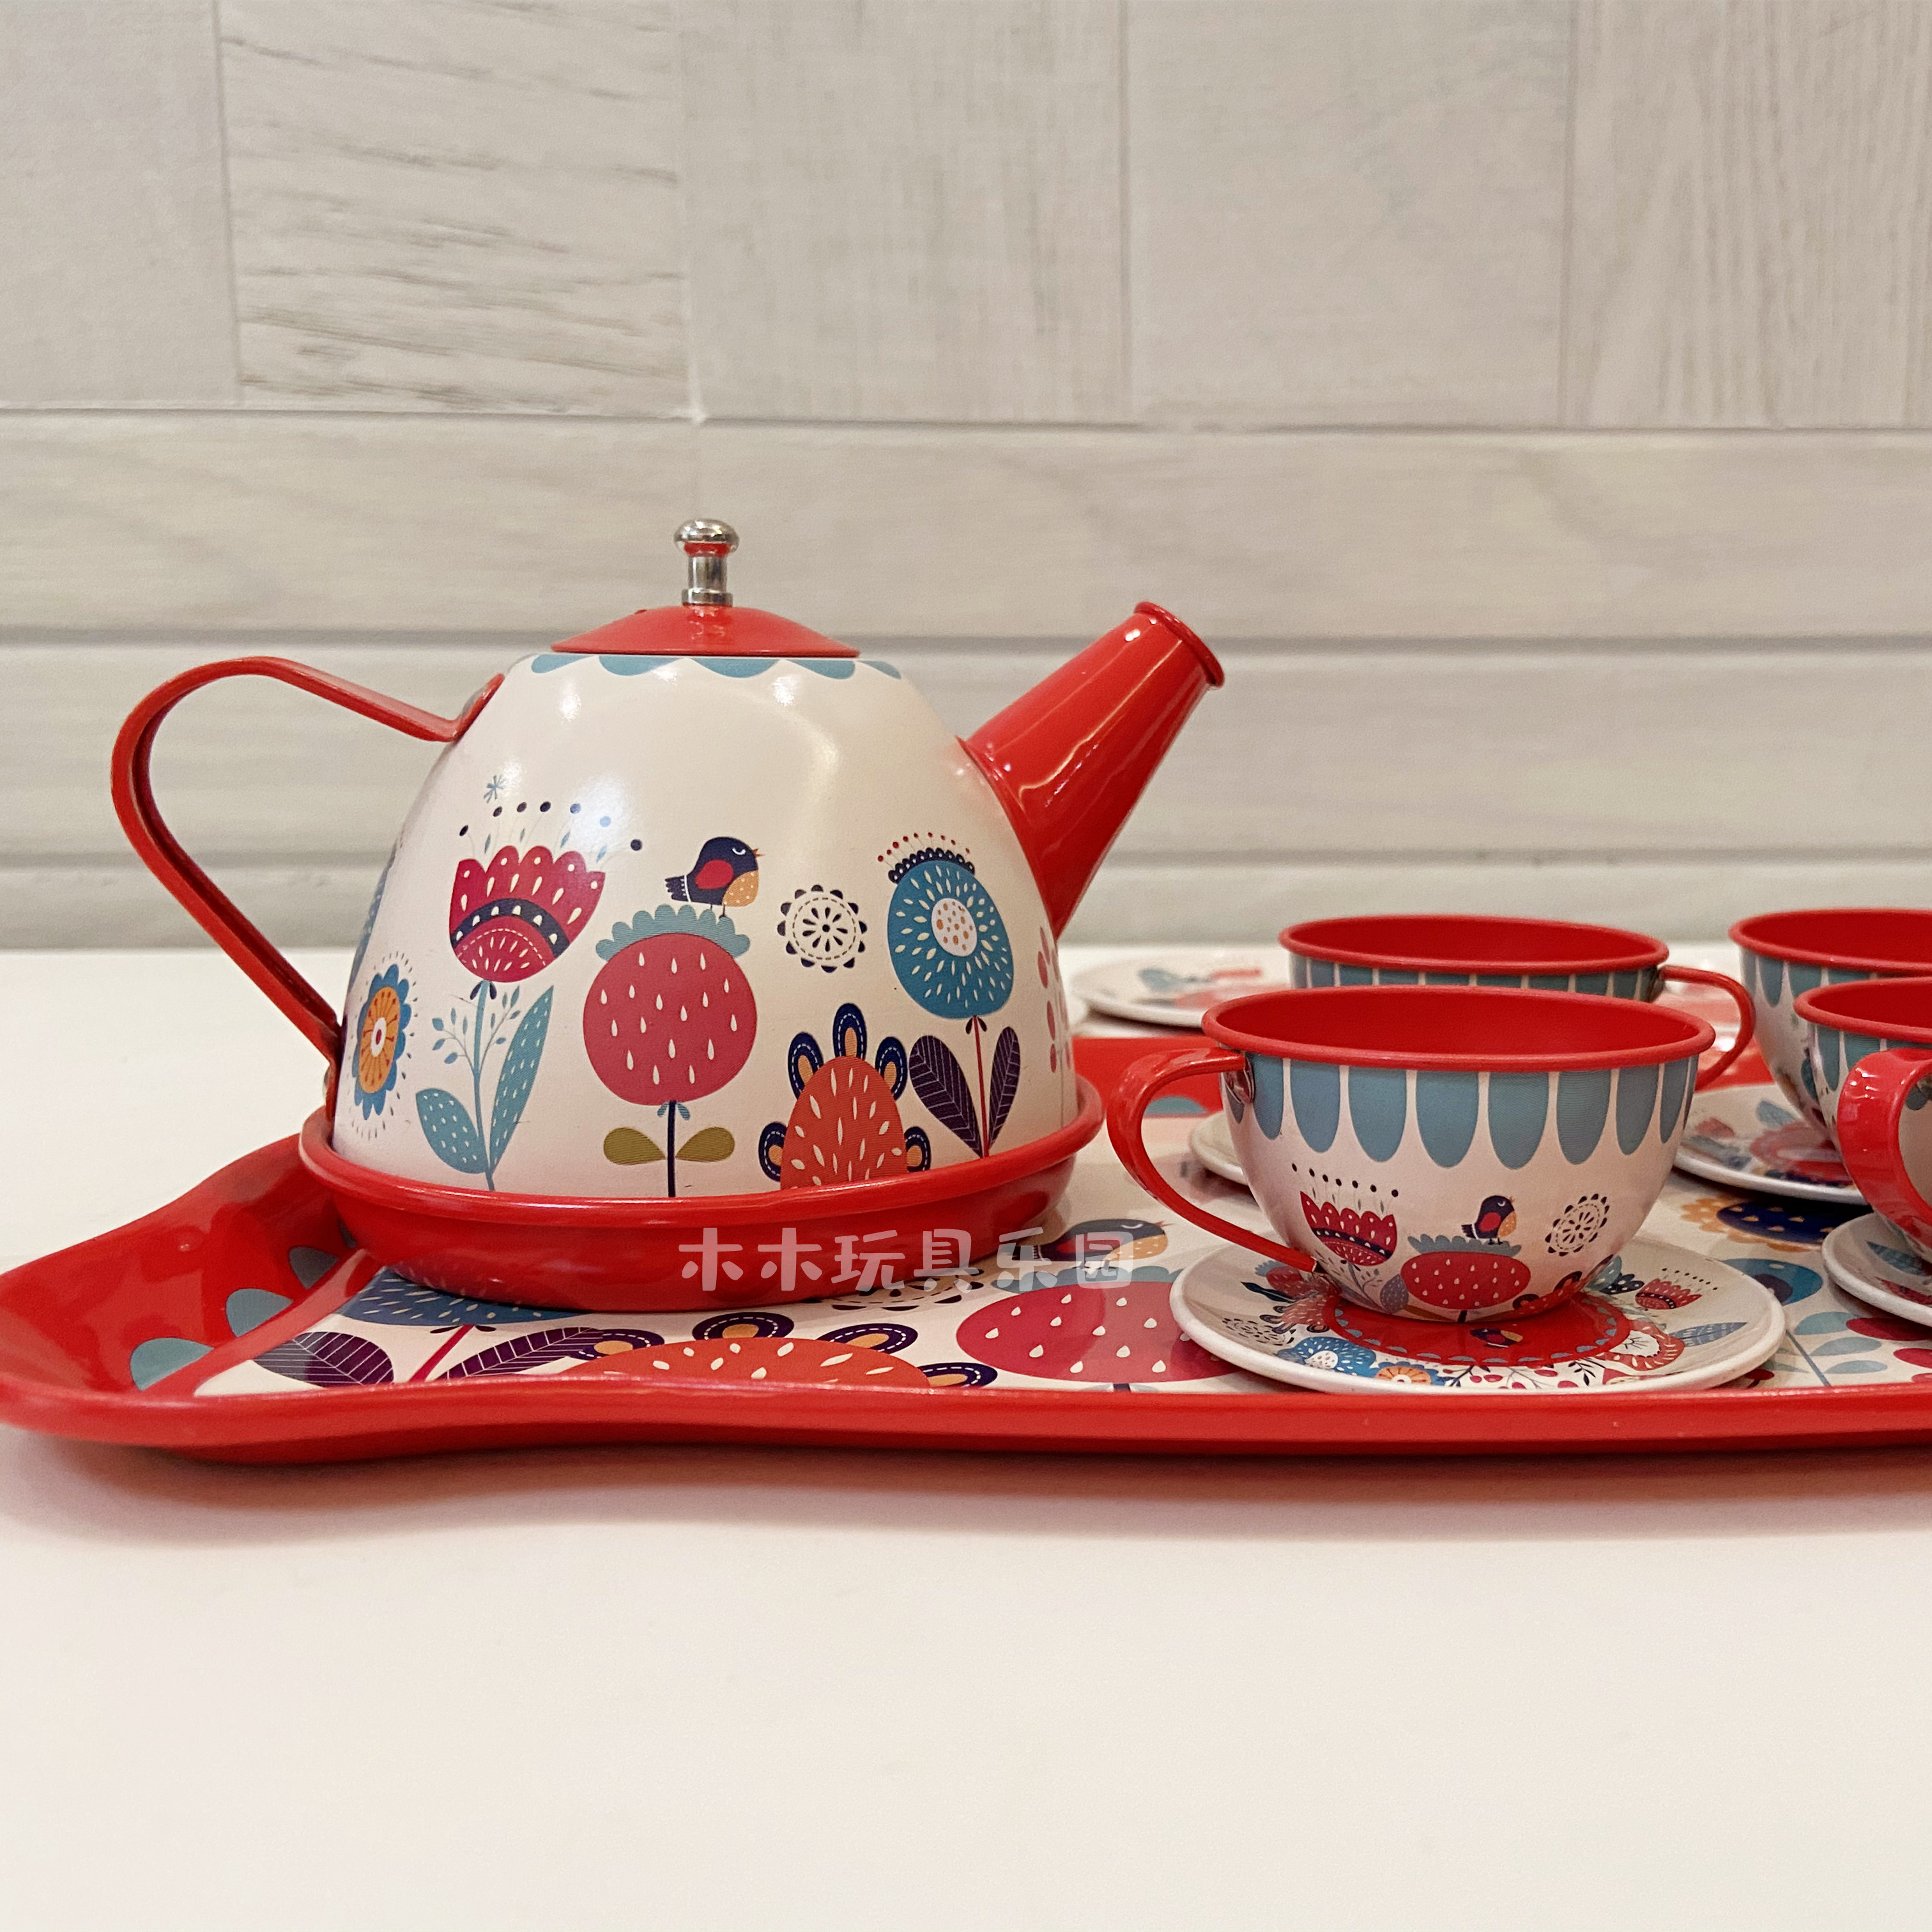 欧式仿真过家家下午茶杯茶具teapot 厨房玩具欧式马口铁茶壶盘子